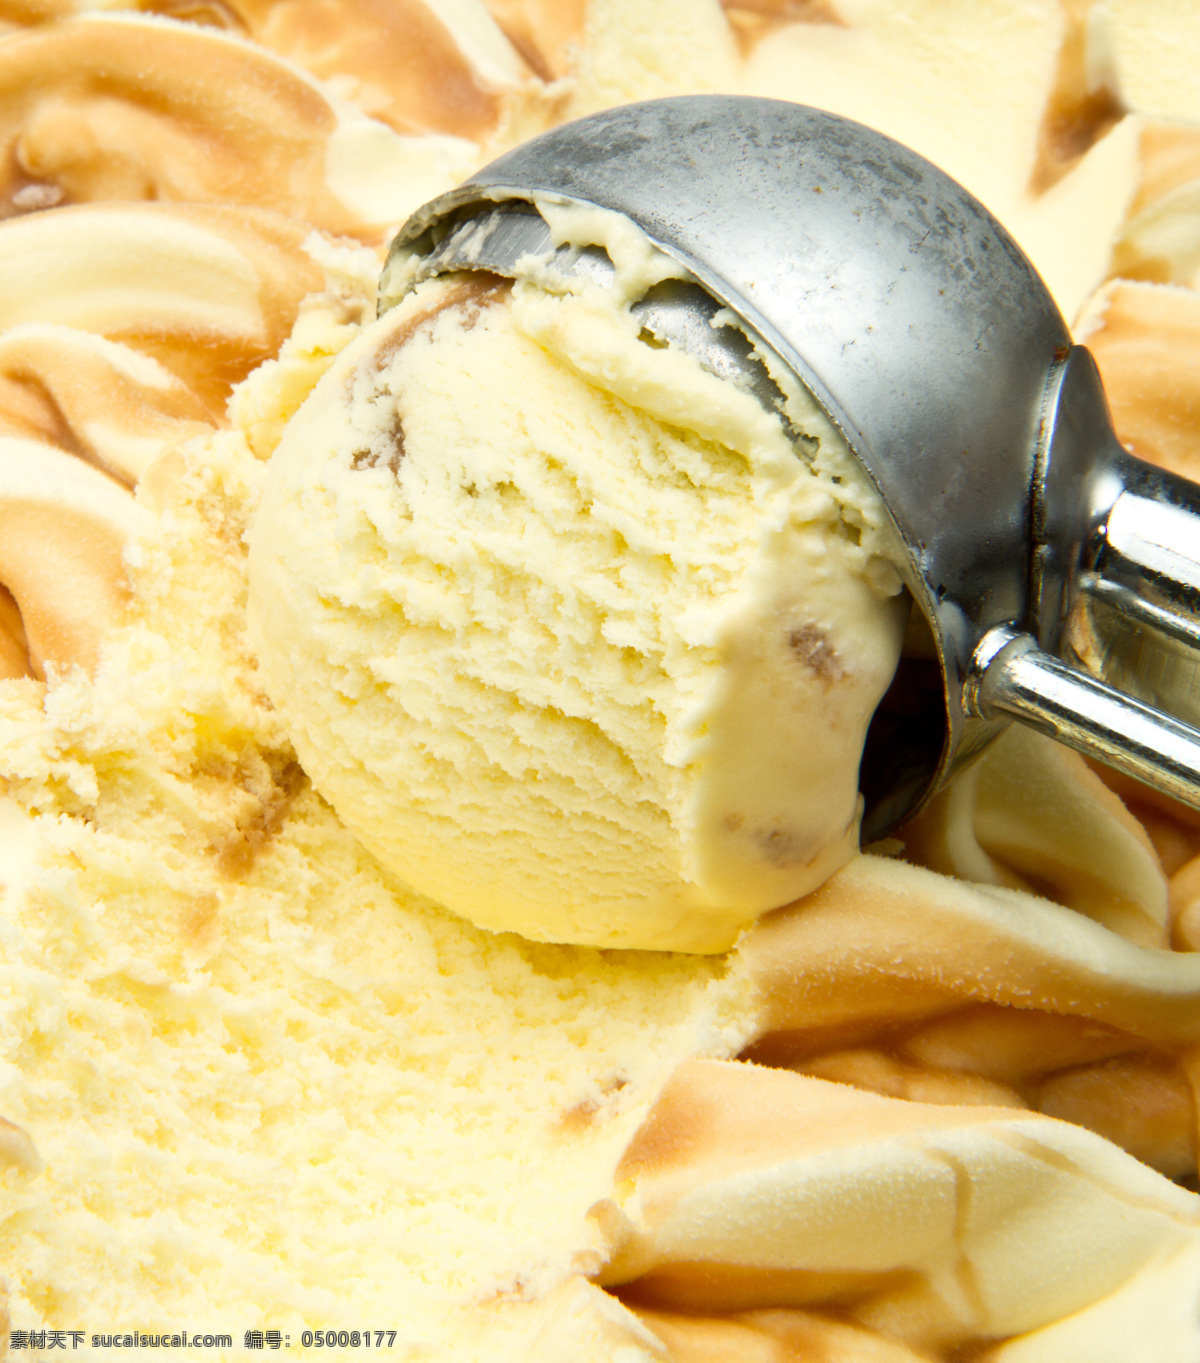 冰淇淋 美食 冰激凌 食物摄影 美味 甜品 美食图片 餐饮美食